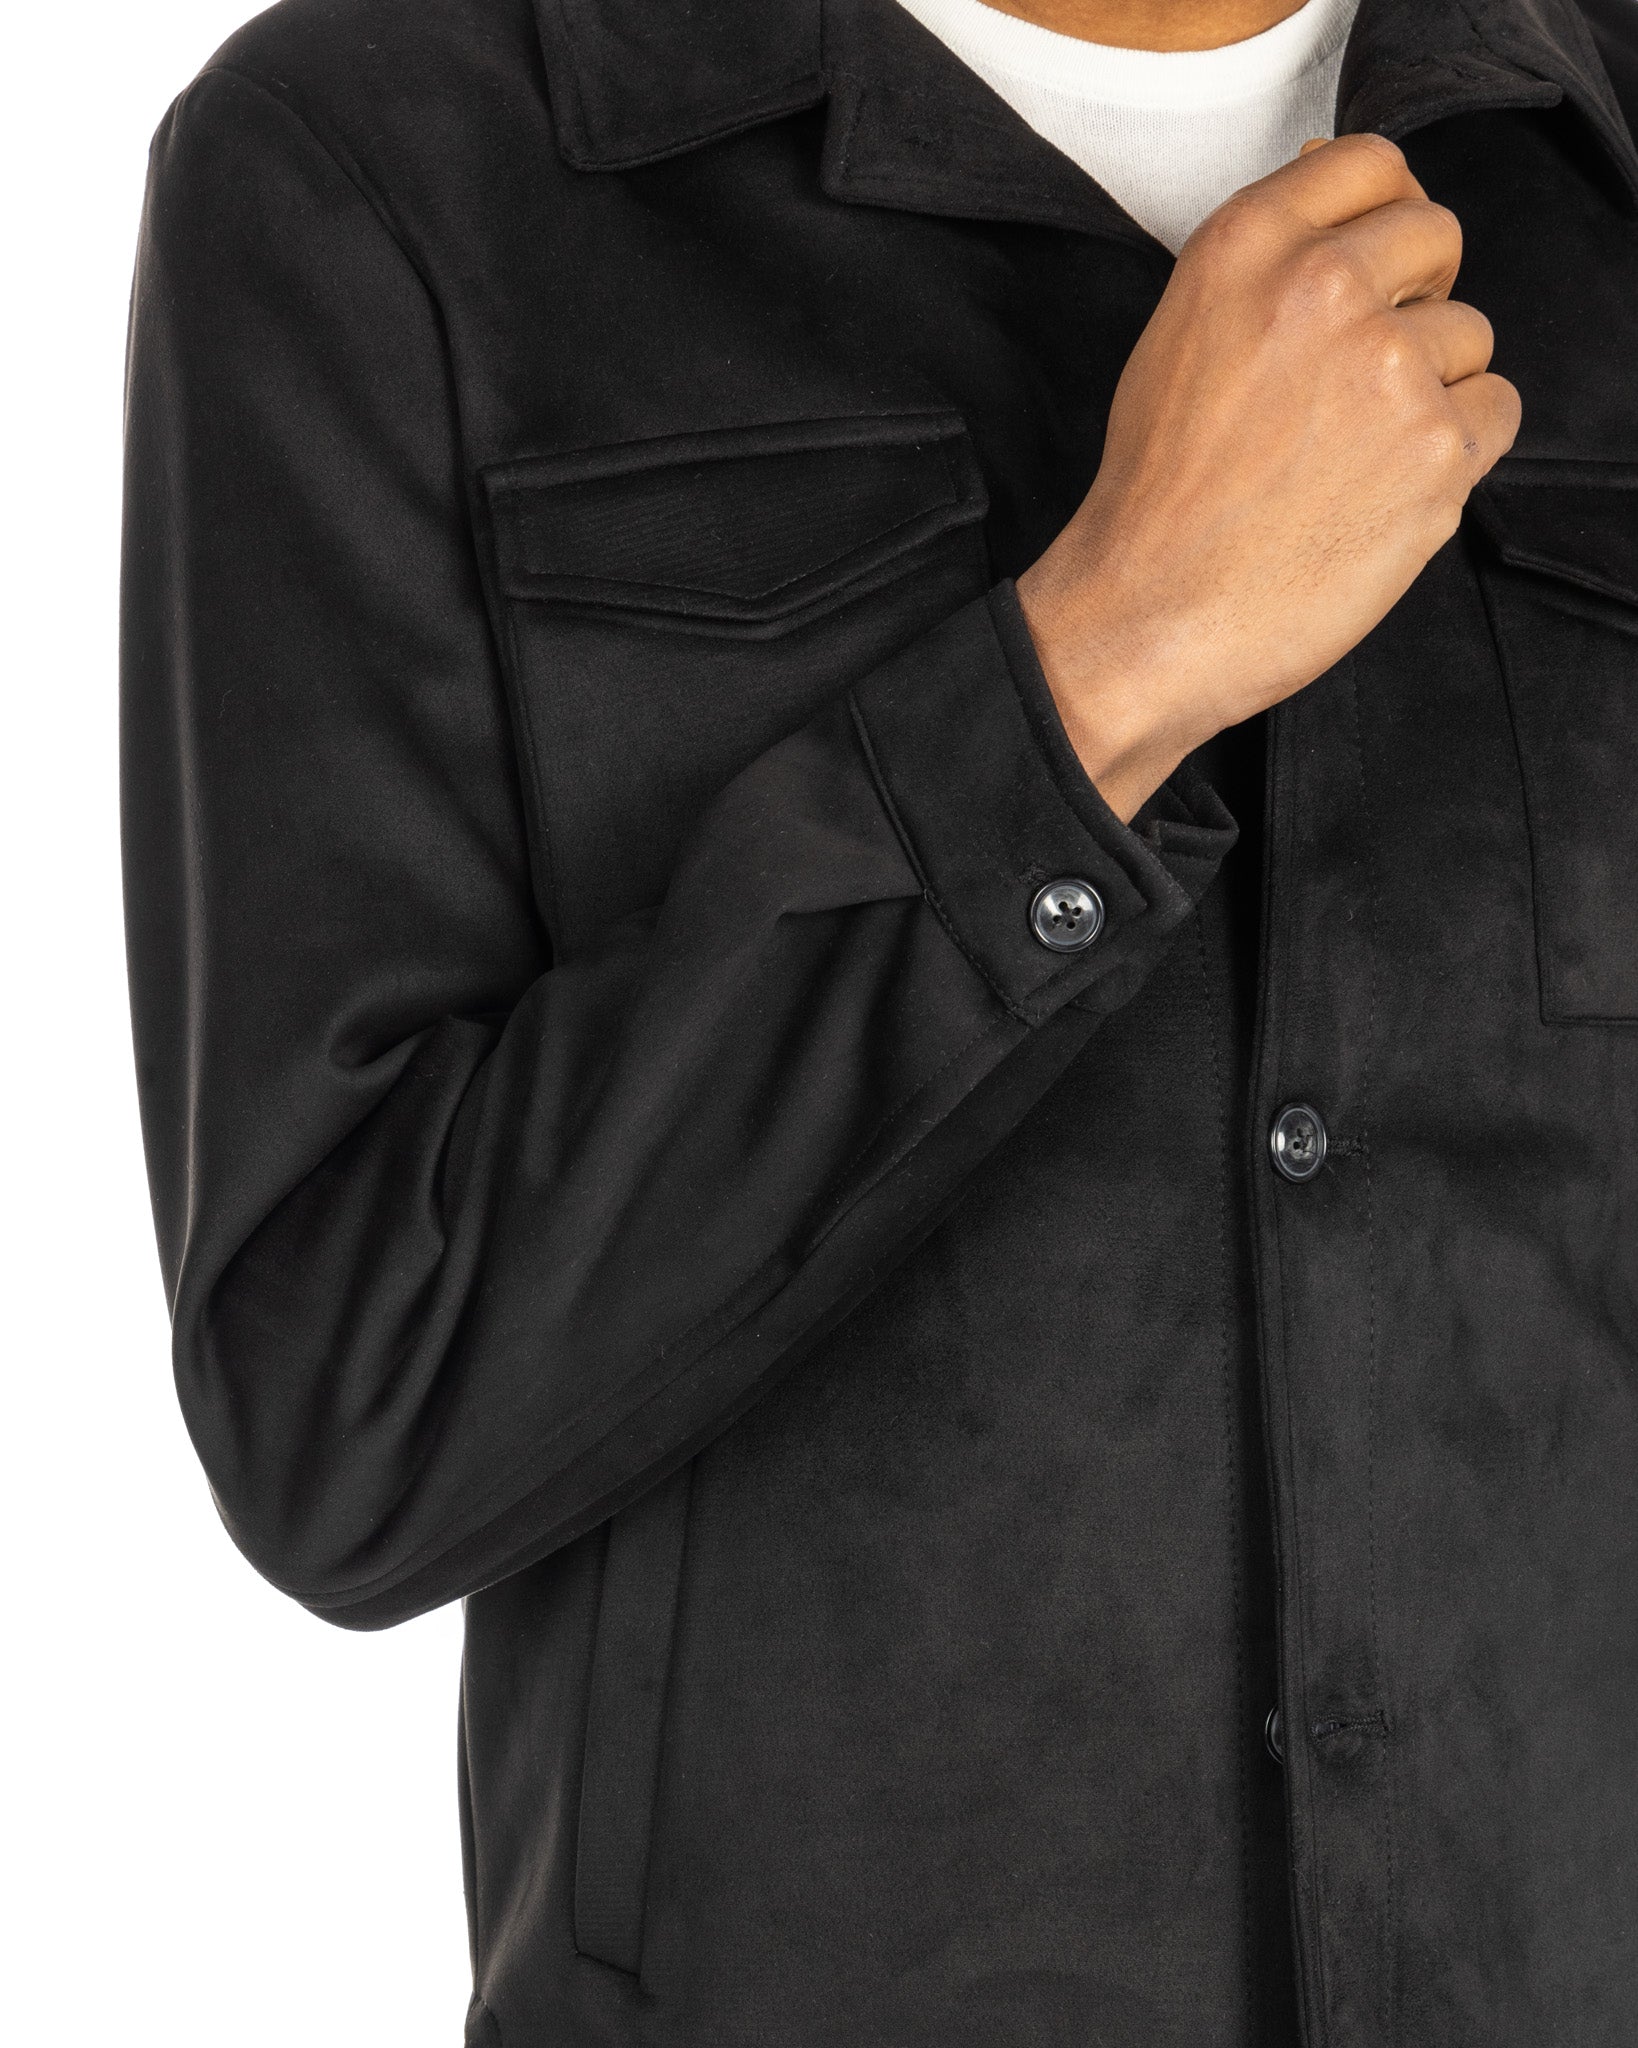 Meridion - black suede jacket